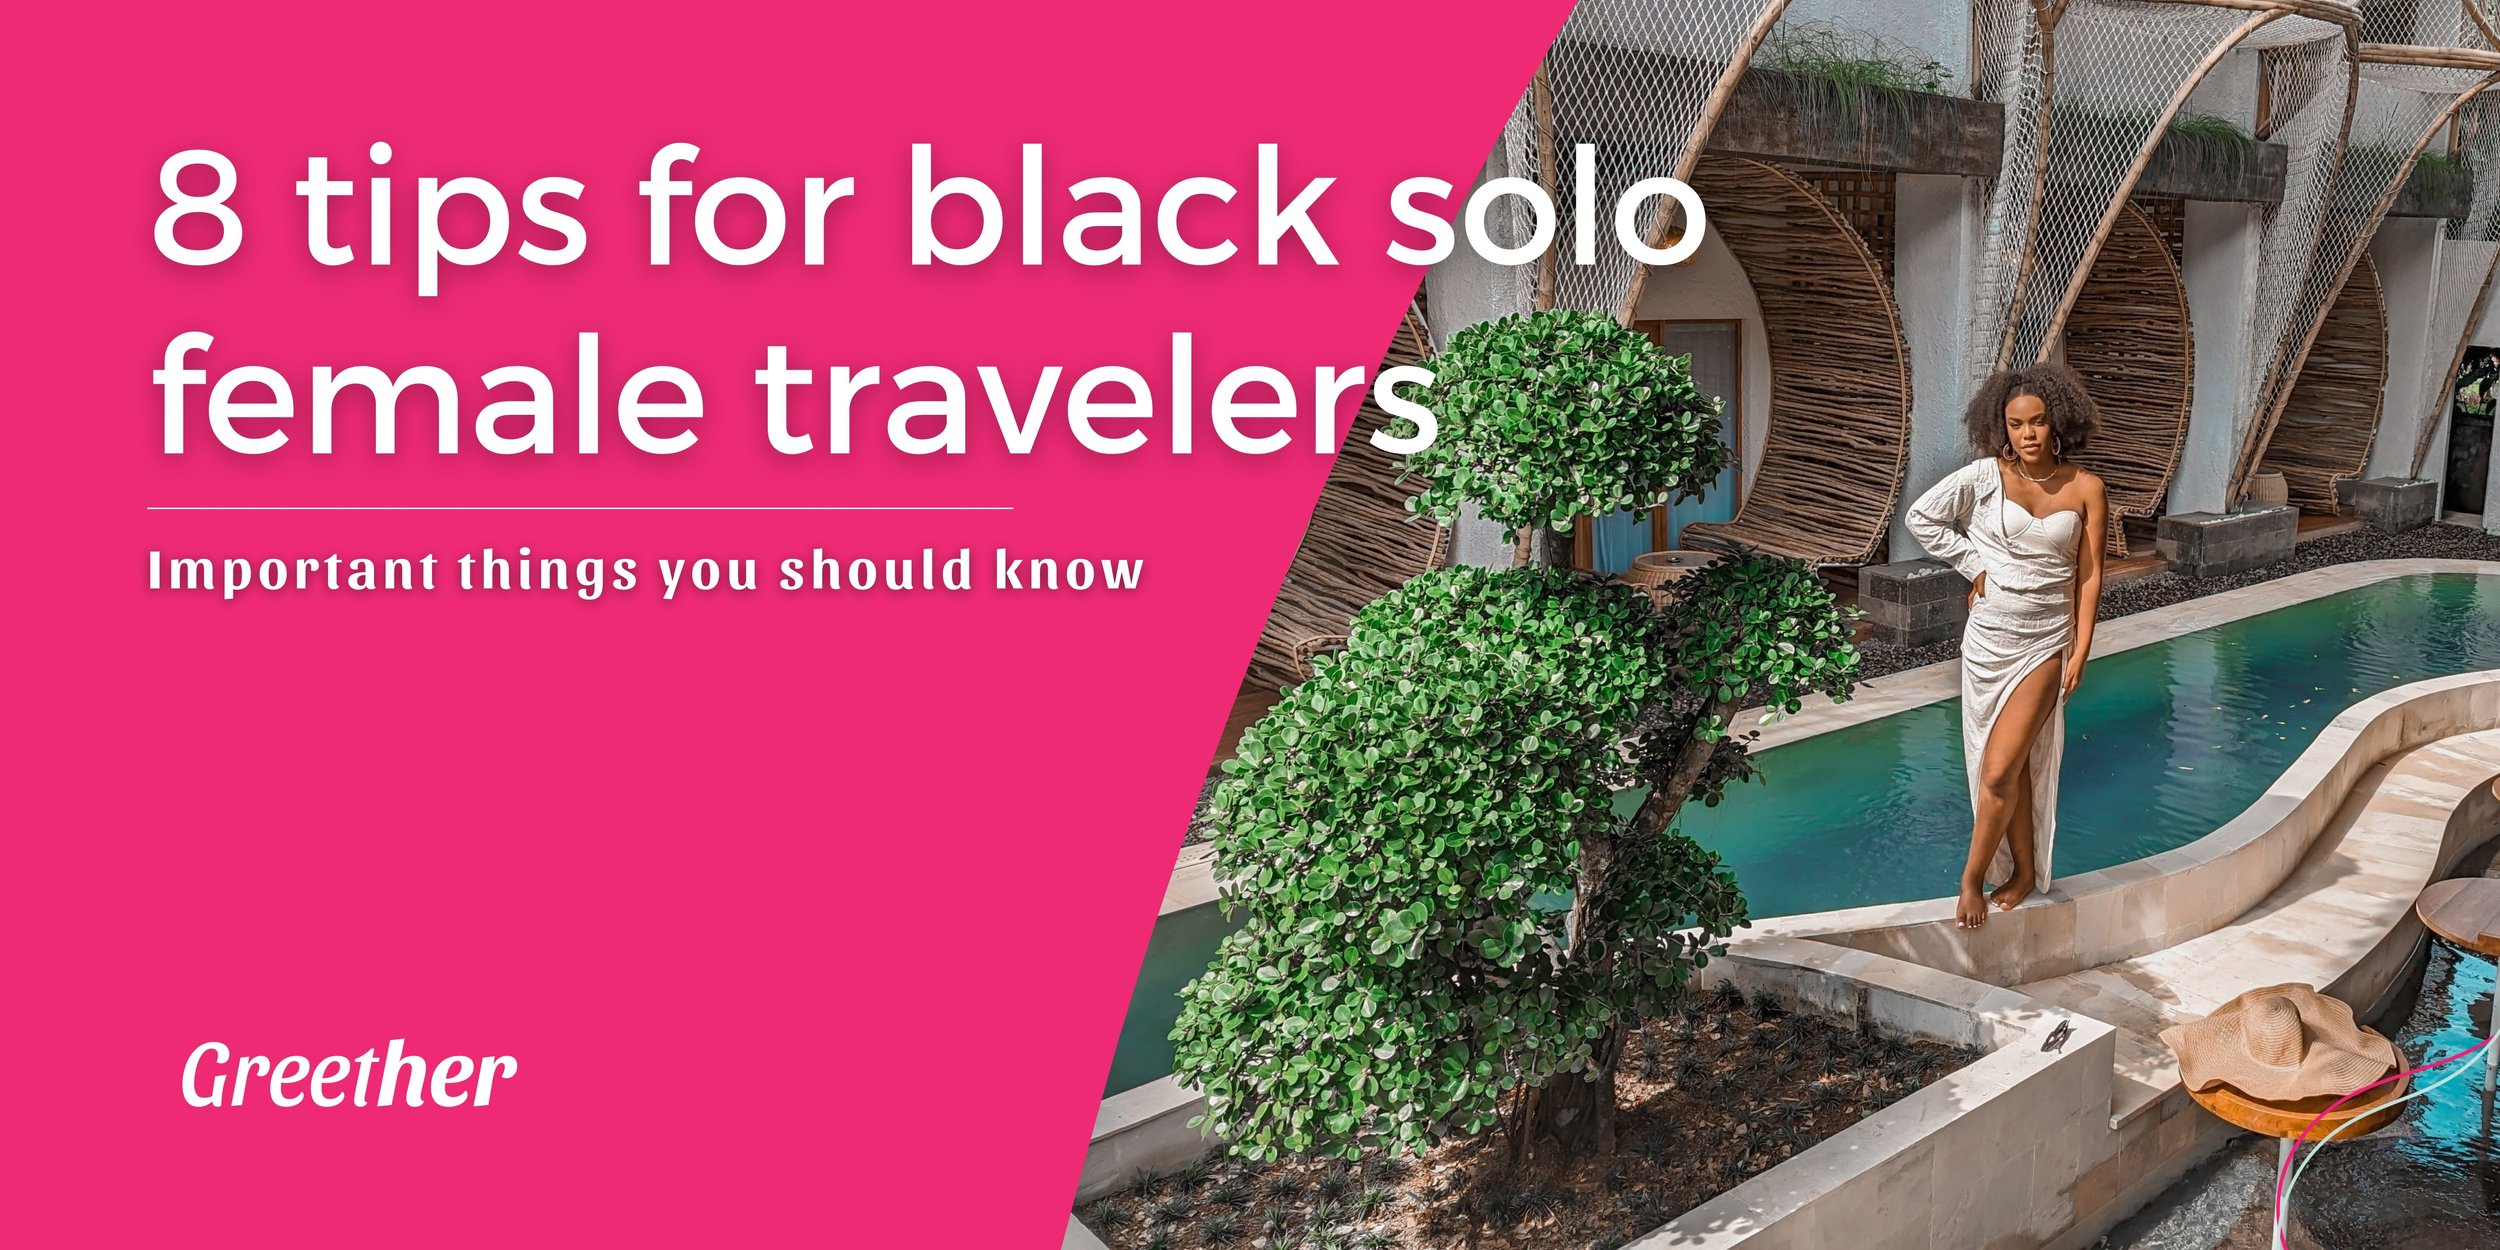 Black solo female traveler tips by @danirenaeh